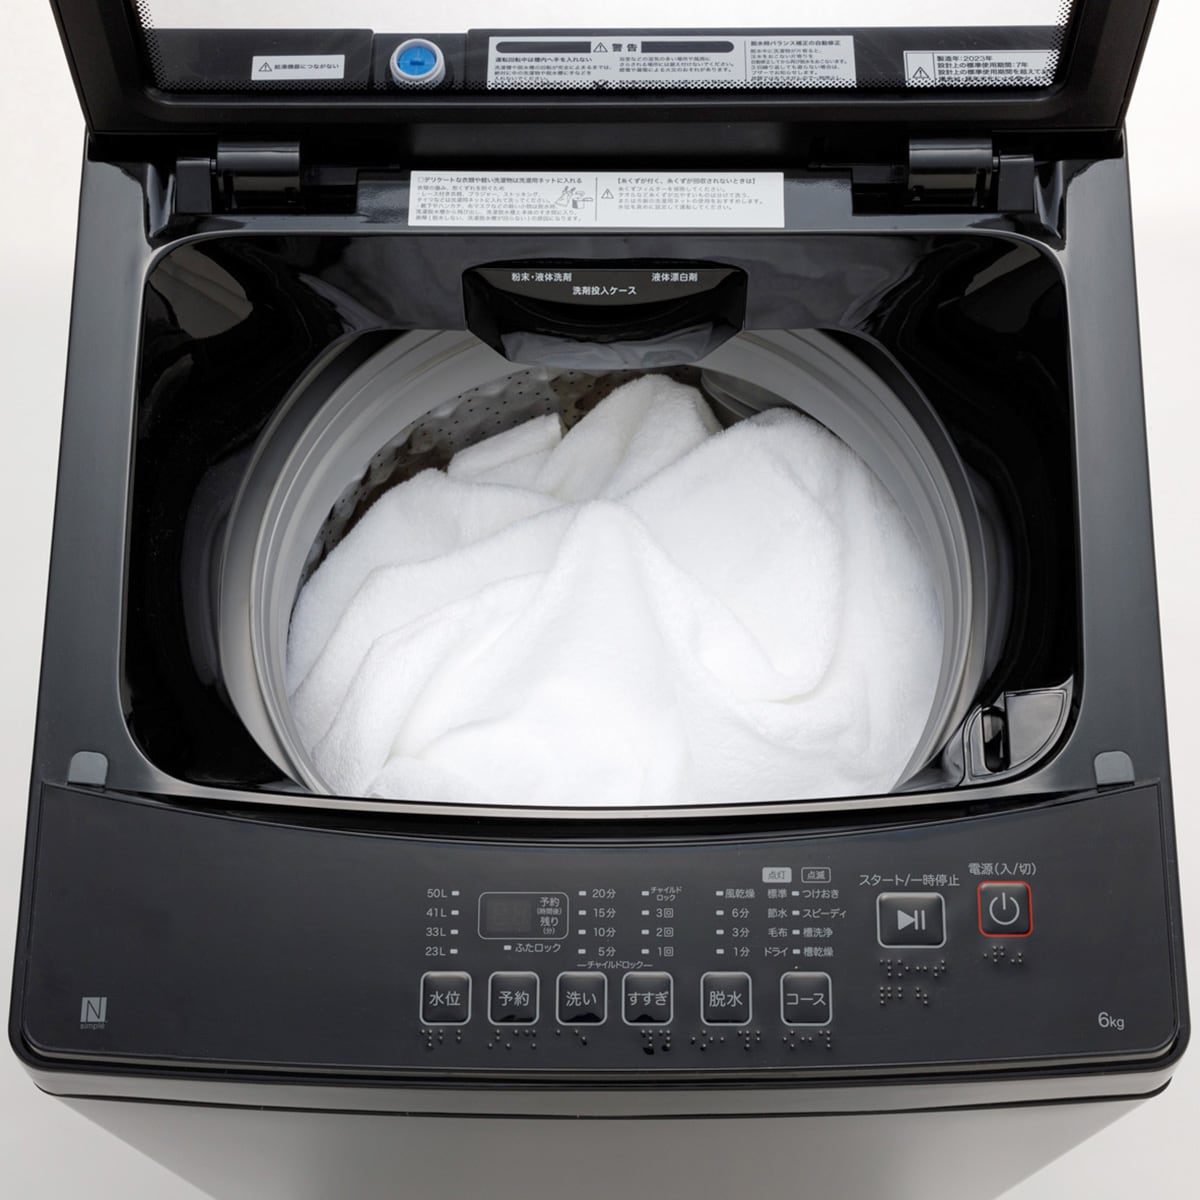 6kg全自動洗濯機(NT60L1 ブラック) 延長保証付き